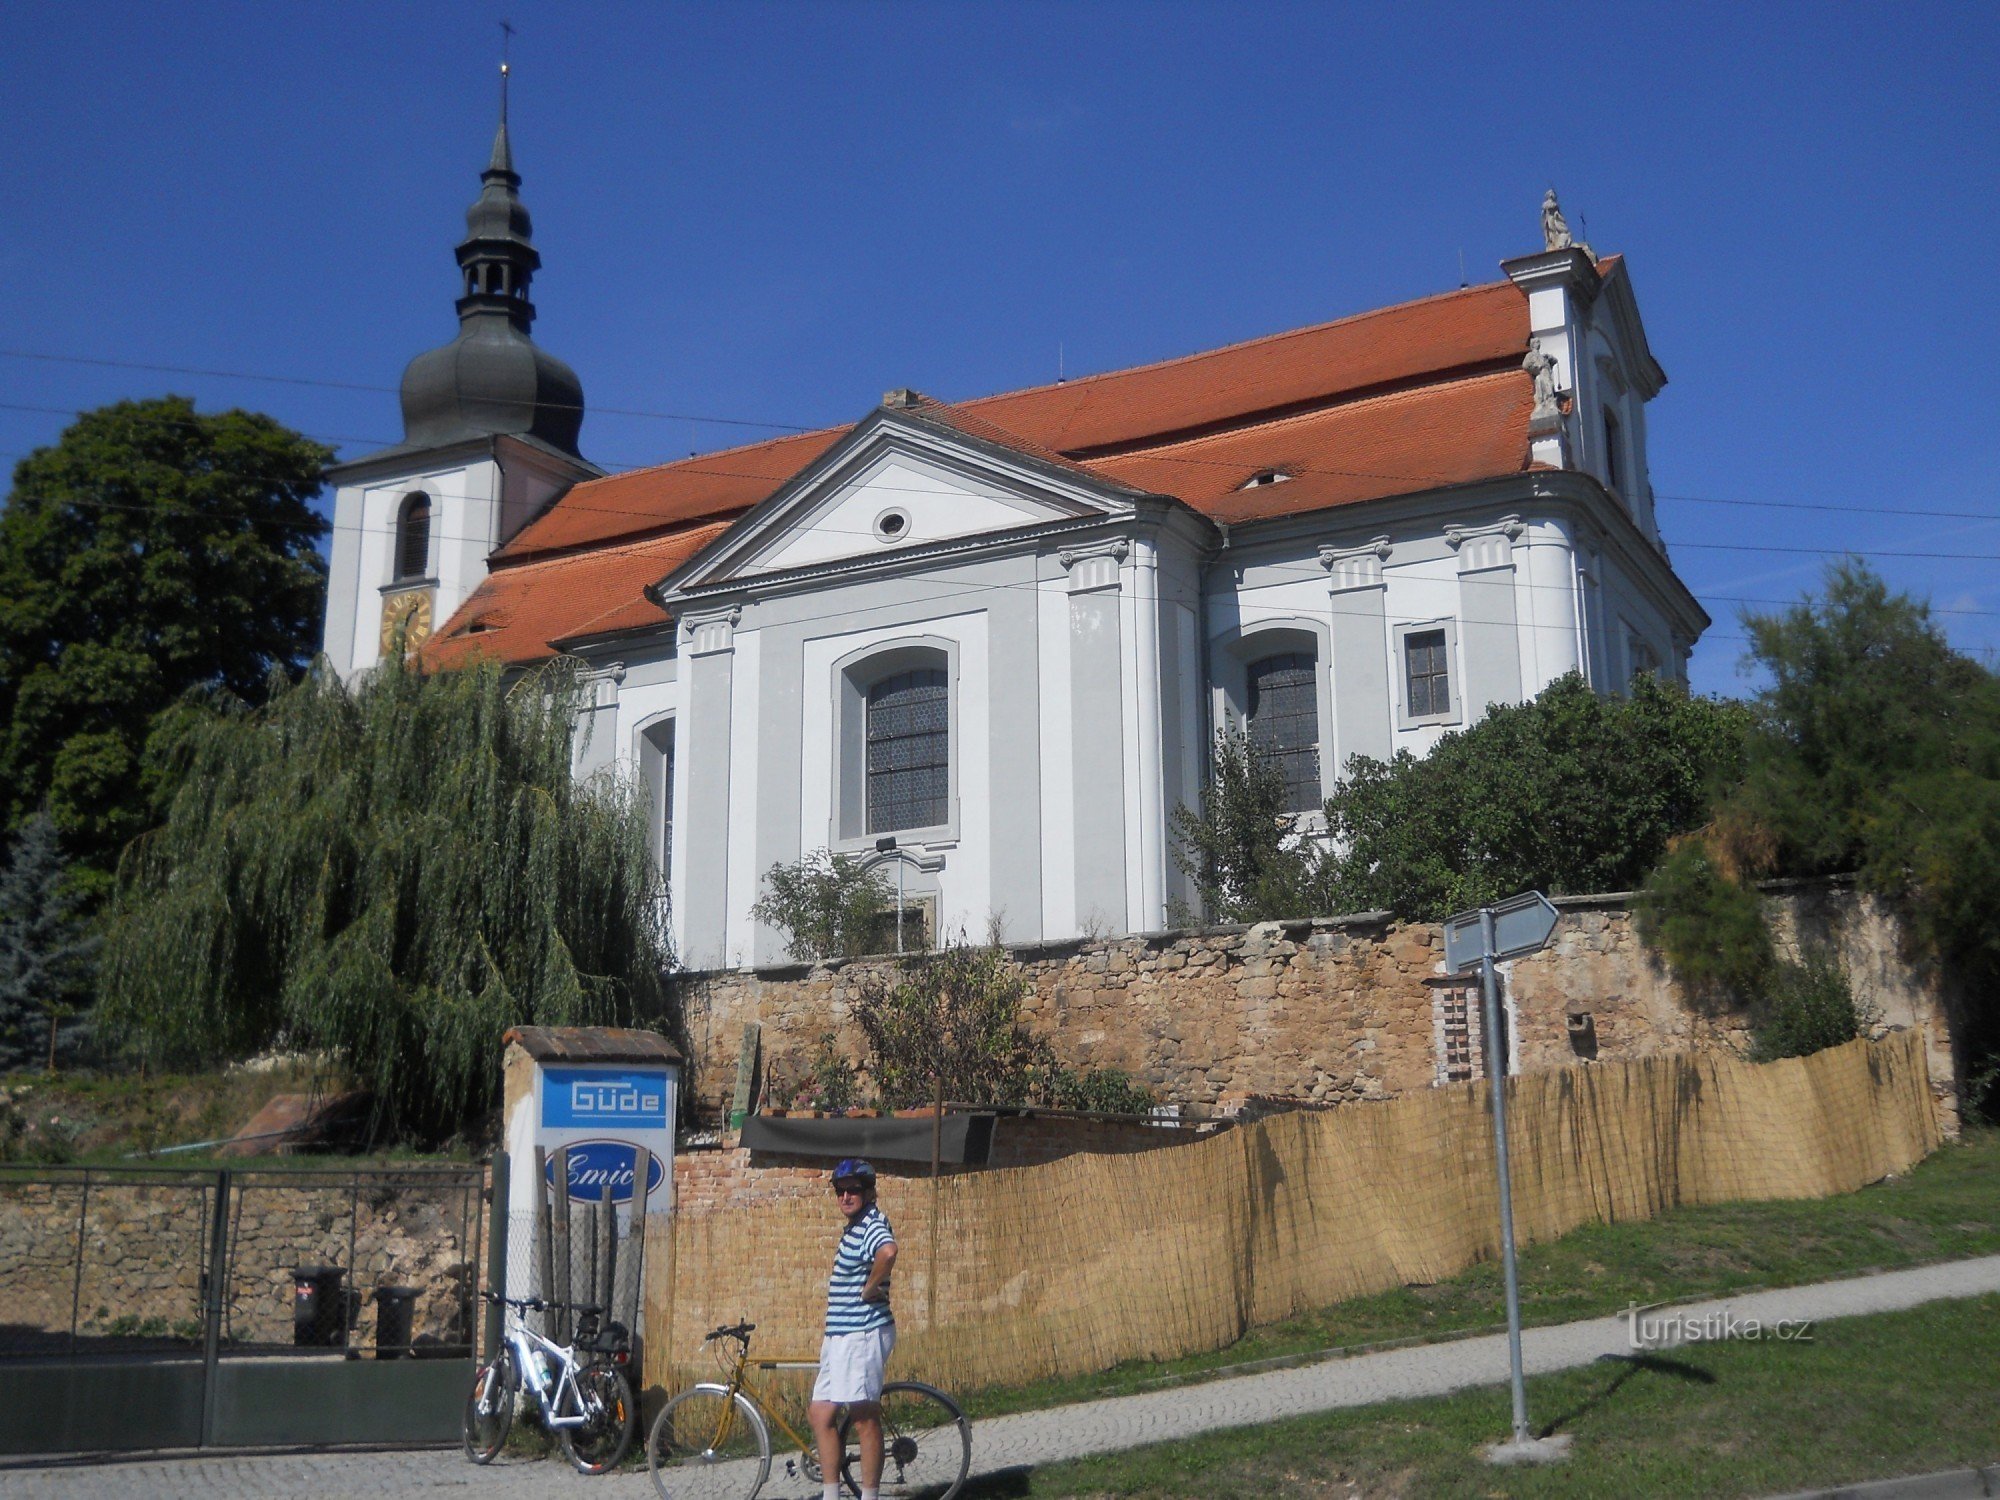 Vejprnice - igreja barroca de St. Vojtěch de 1722 - 1726